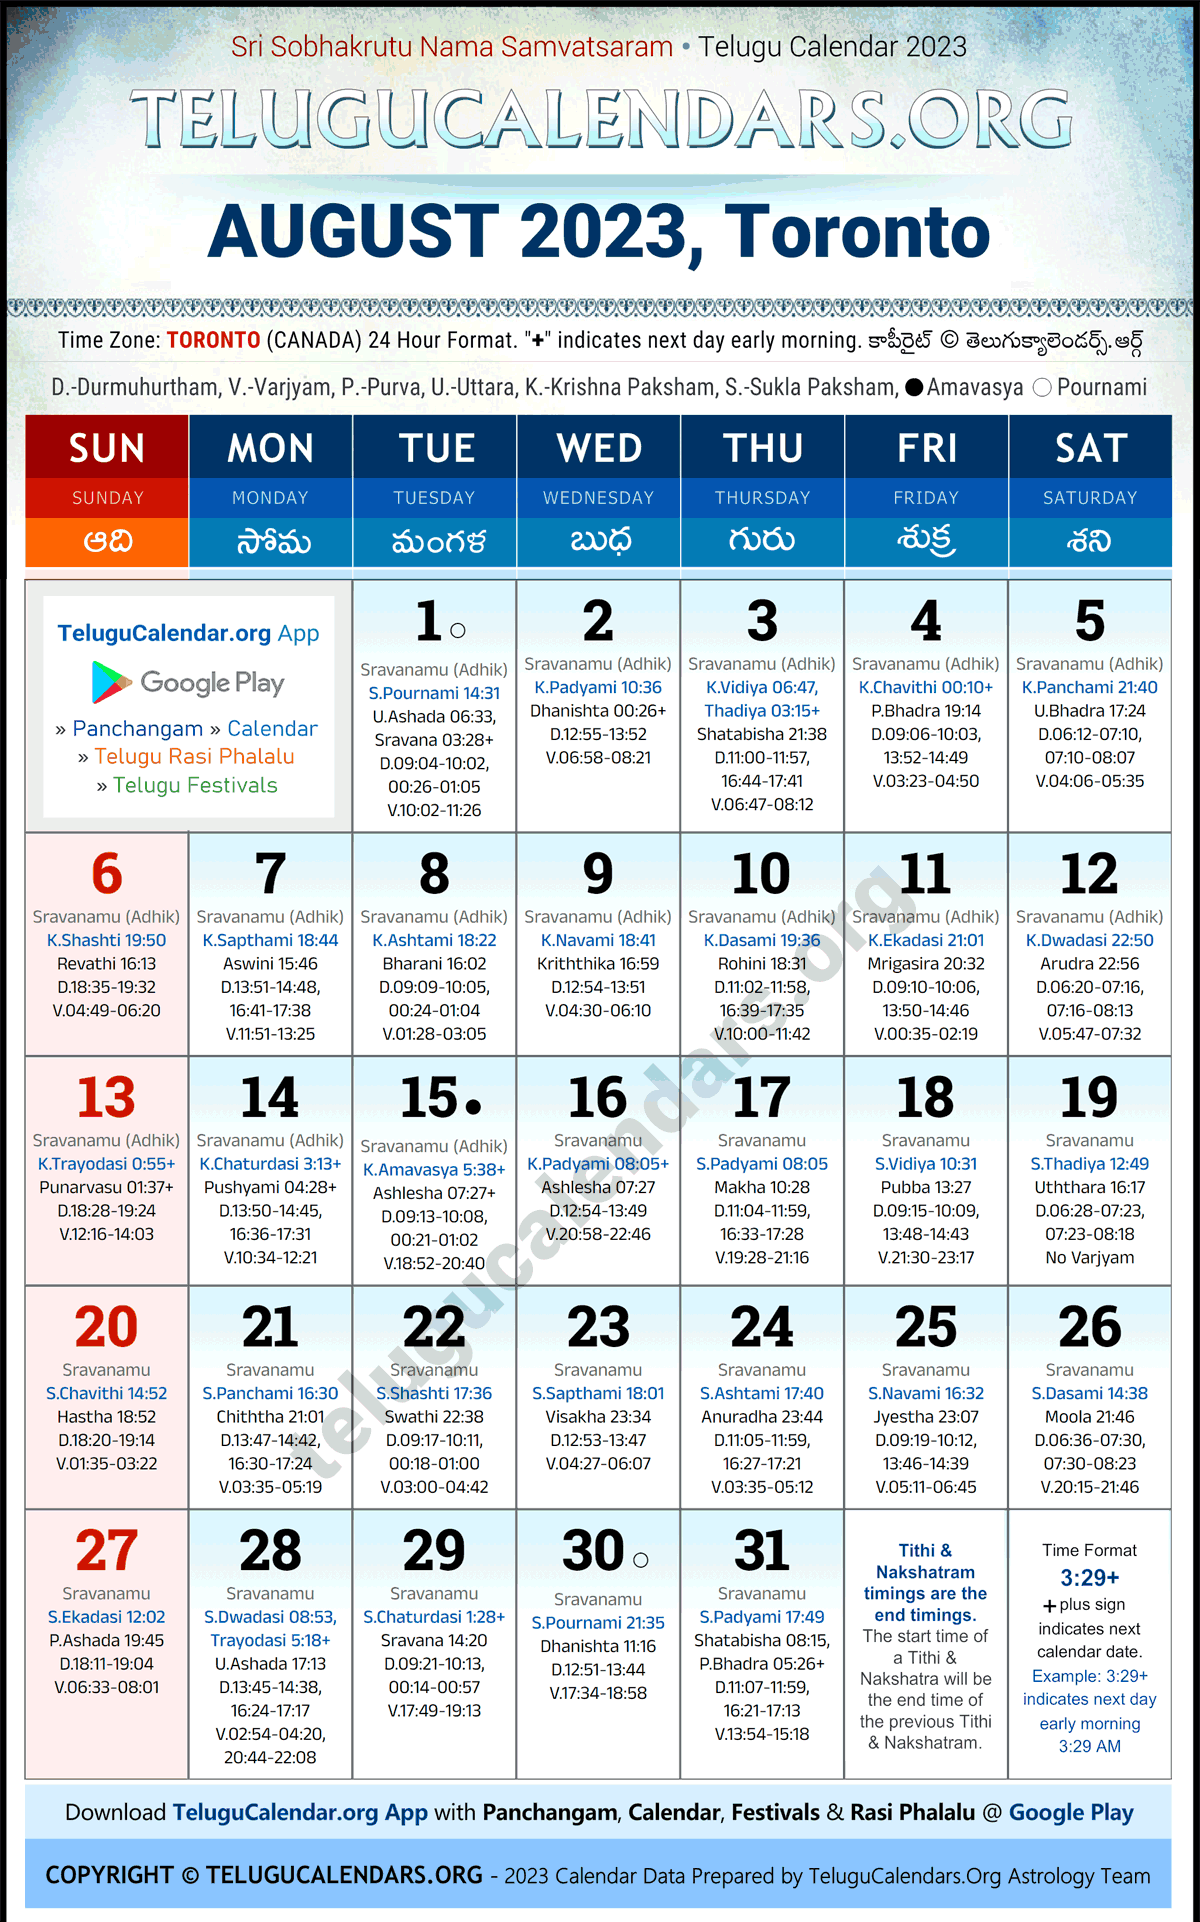 Telugu Calendar 2023 August Festivals for Toronto